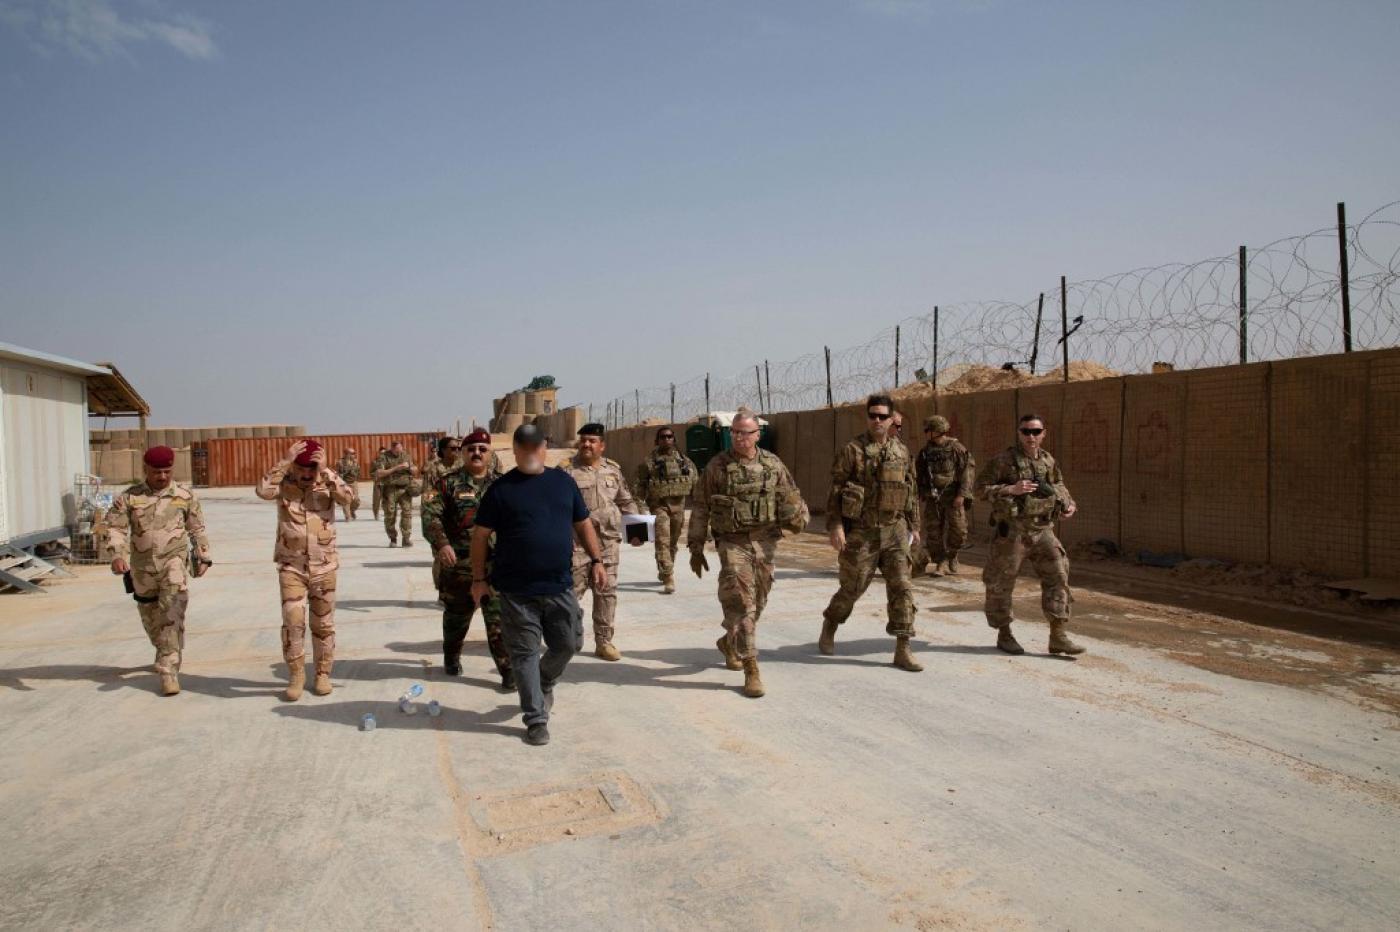 تحرک کم سابقه نظامی آمریکا در عراق برای حمله گسترده به حشدالشعبی/ اعزام نیروهای آمریکایی از کویت و سوریه به عراق/ هشدار ایران به آمریکا